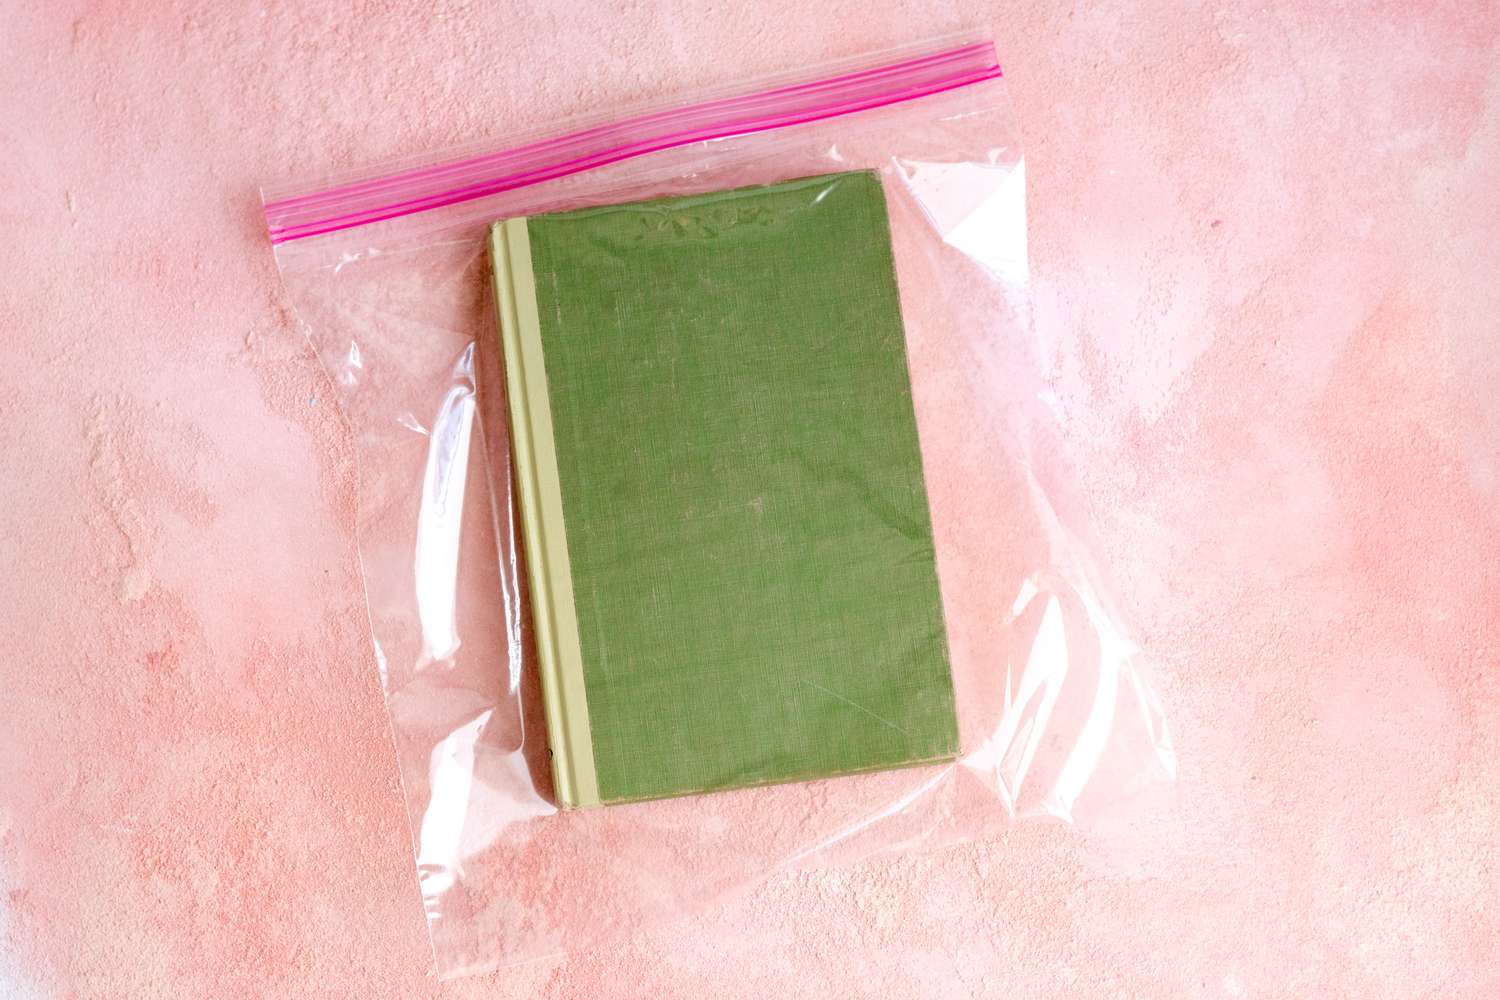 un libro metido en una bolsa de plástico